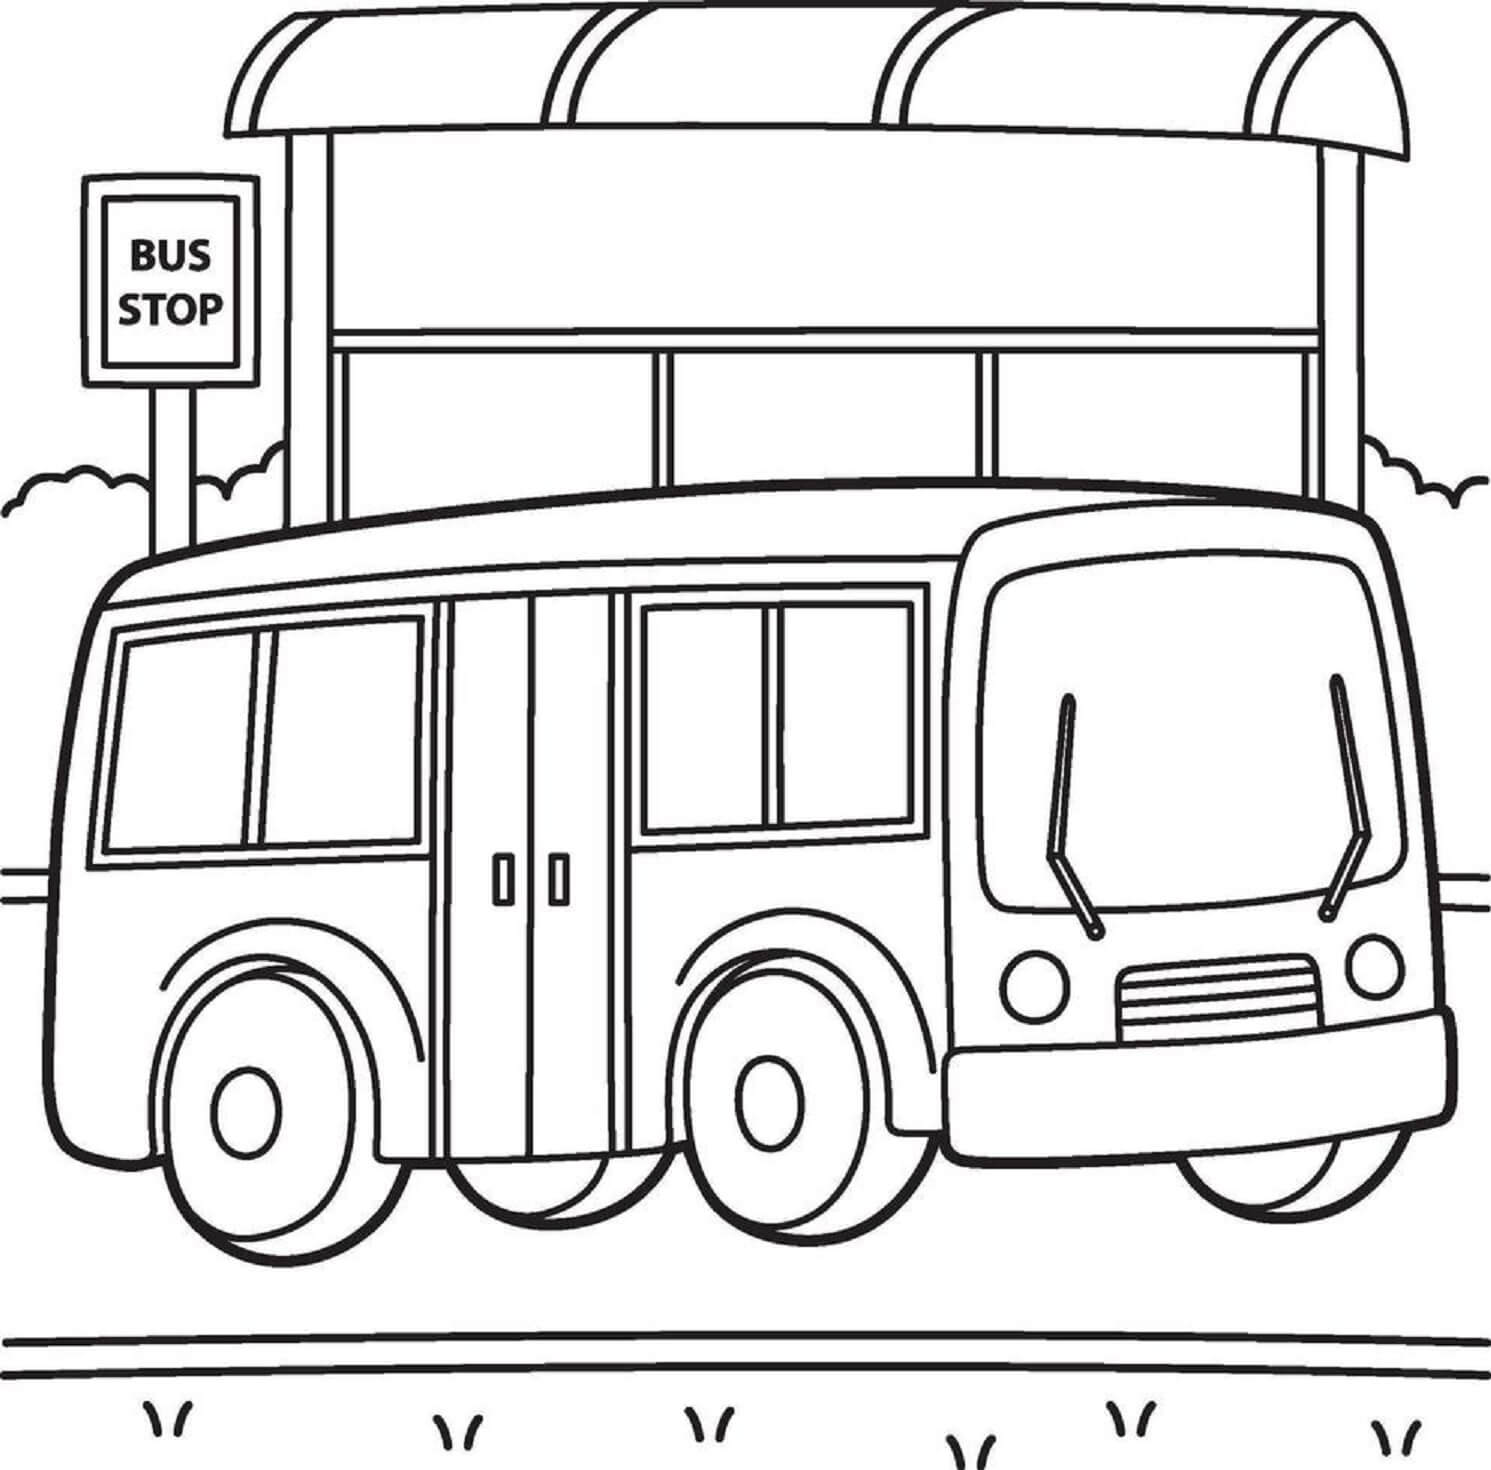 Kolorowanka Autobus z Szyldowym Przystankiem Autobusowym